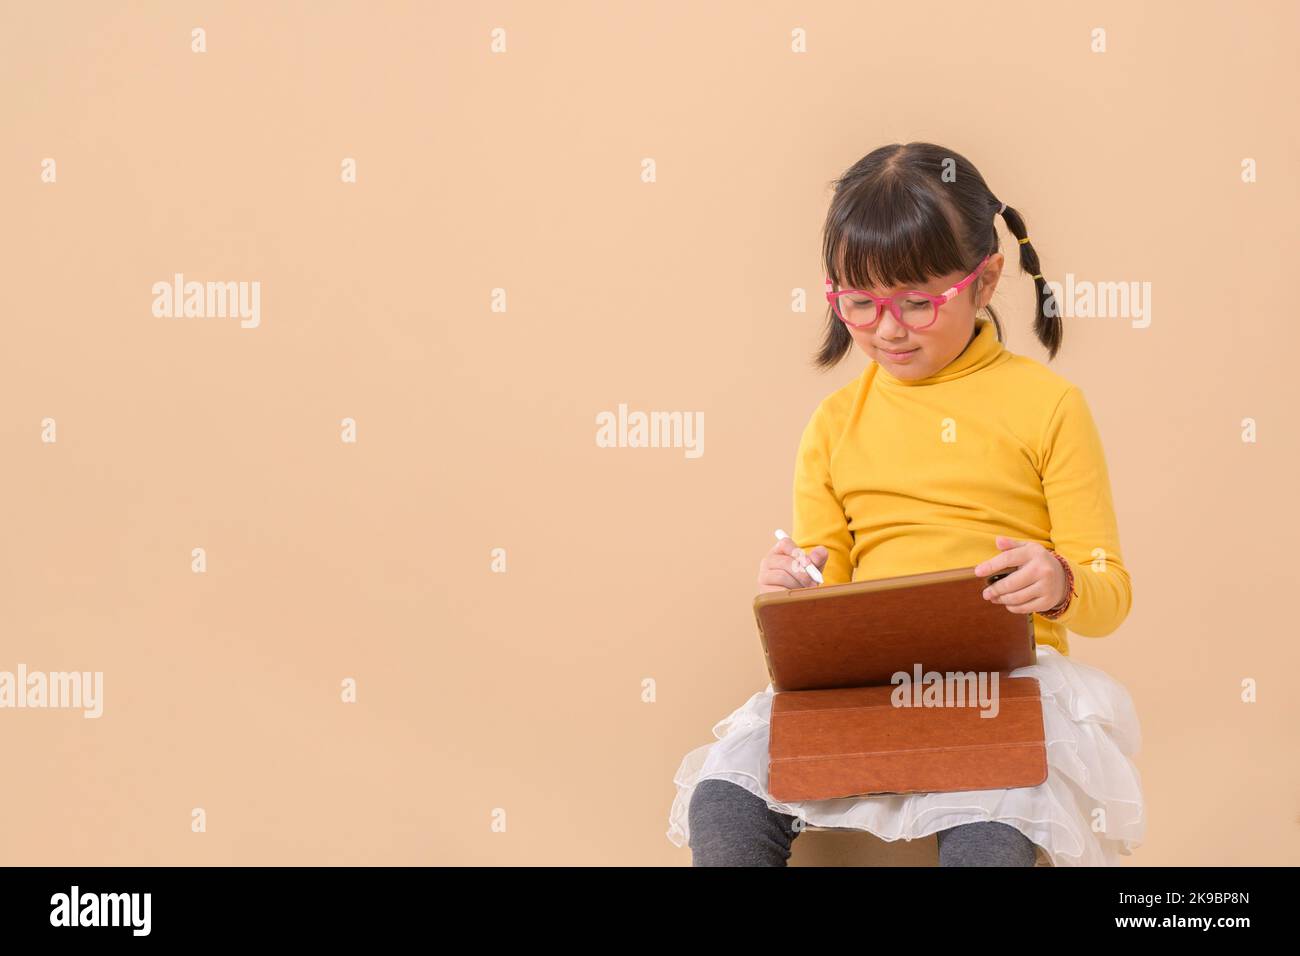 chica asiática sonriente sosteniendo y usando la tableta escribiendo o dibujando con la pluma digital. Espacio de copia libre aislado Foto de stock